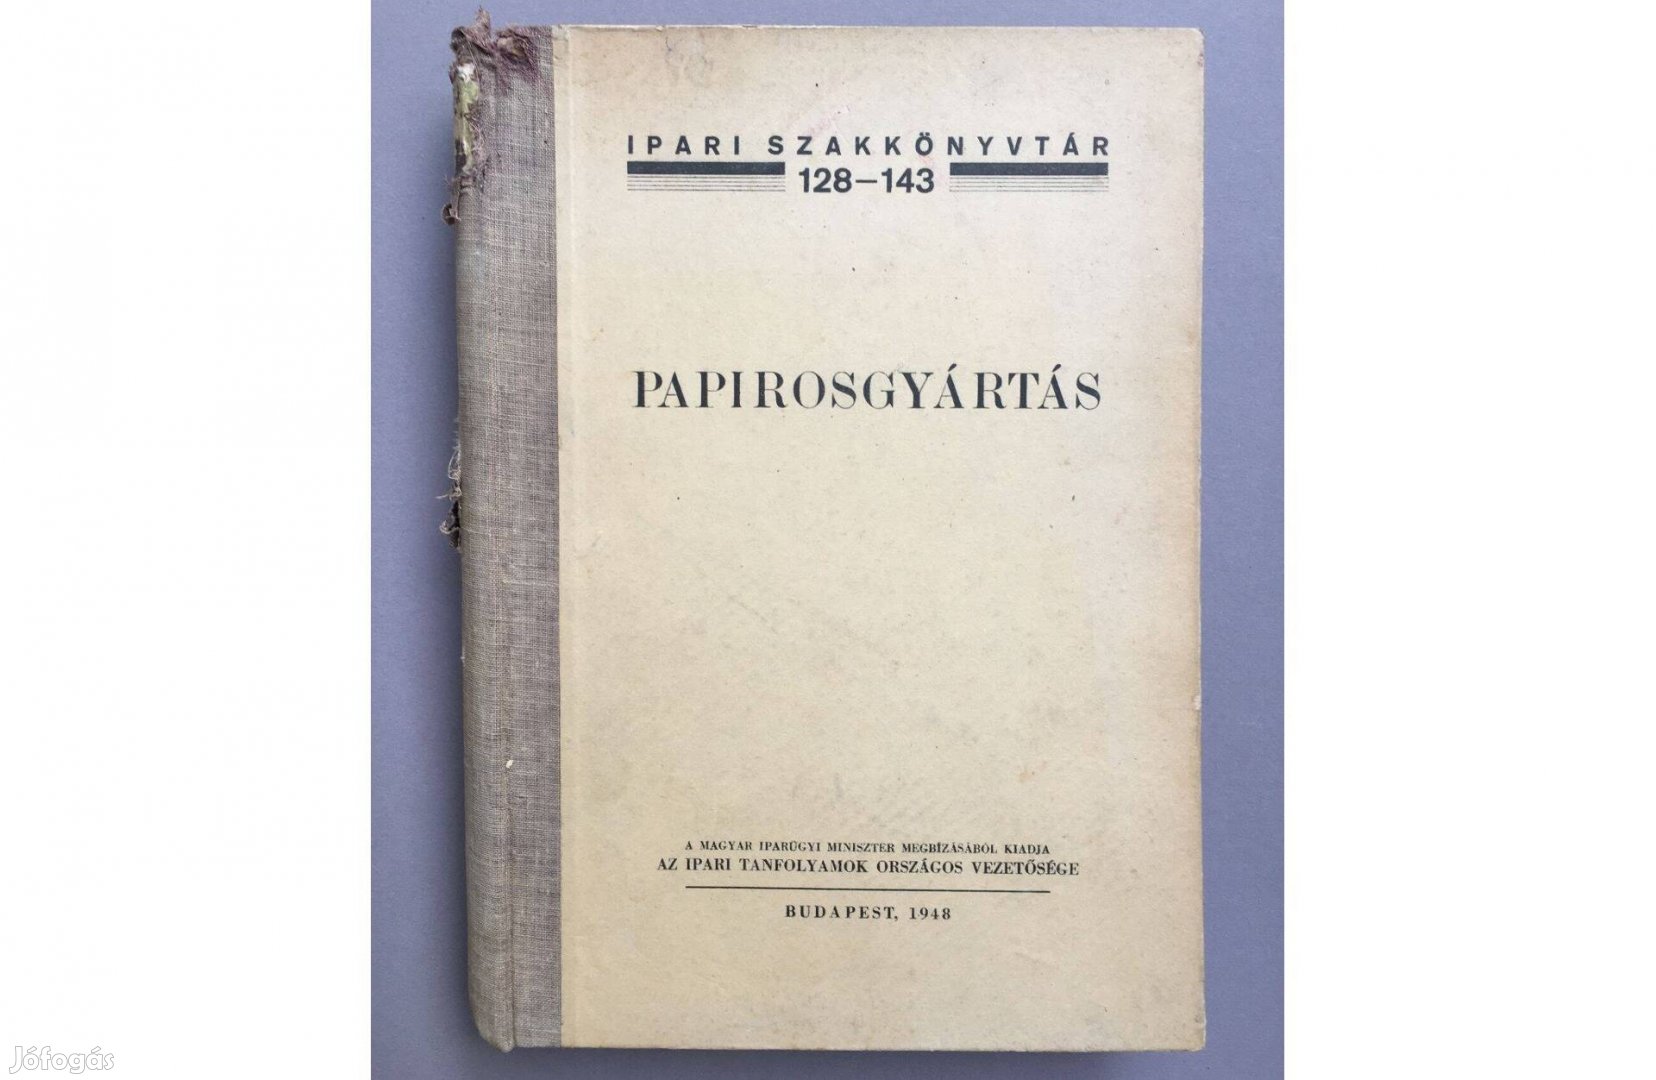 Ferdinandy Gejza: Papirosgyártás c. könyve